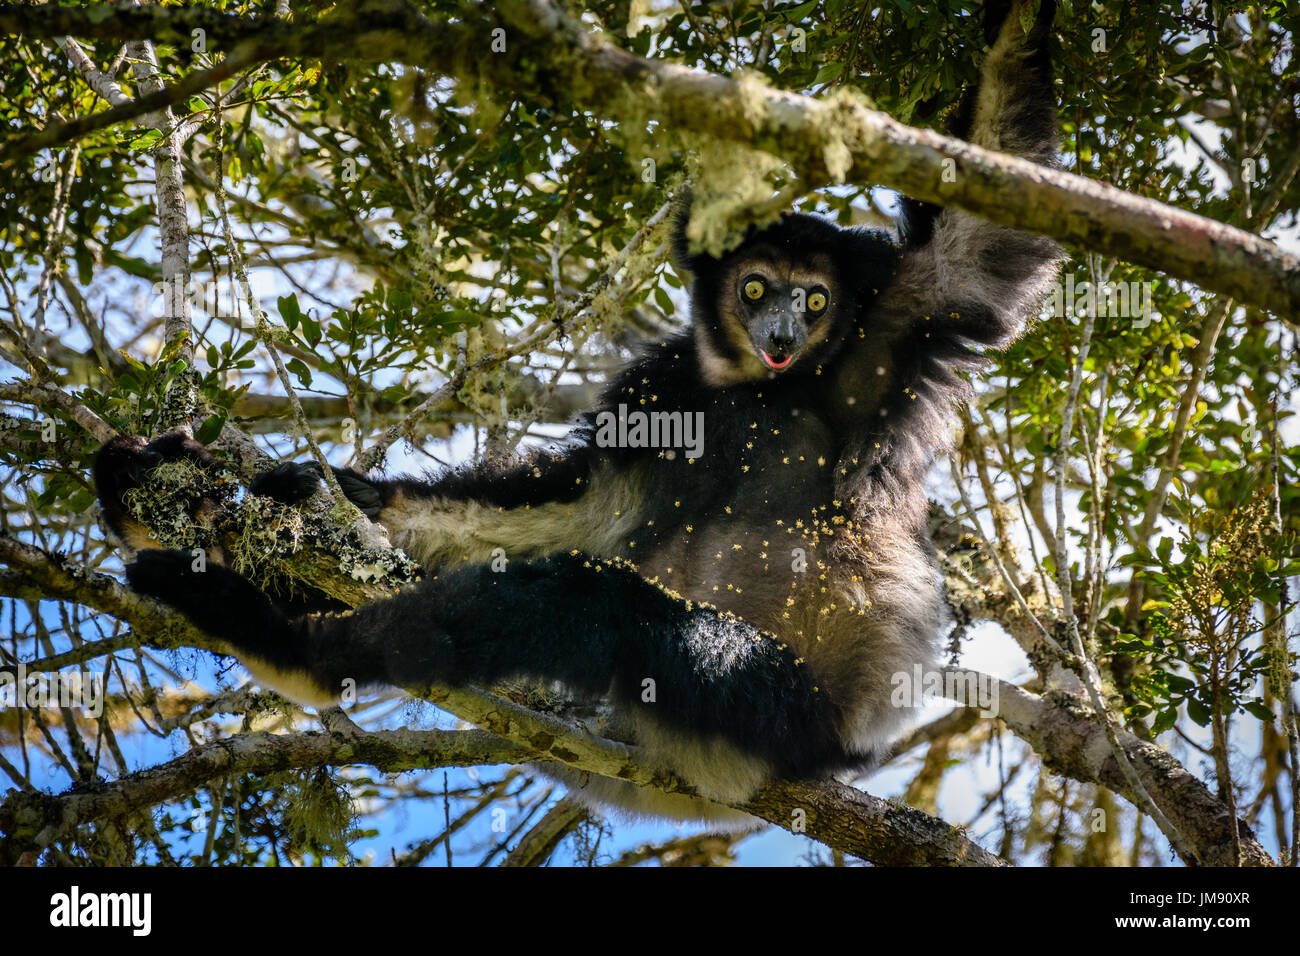 Vom Aussterben bedrohte Indri Lemuren hängen in den Baumkronen Blick in die Kamera, die umgeben von Blättern und Blüten Stockfoto